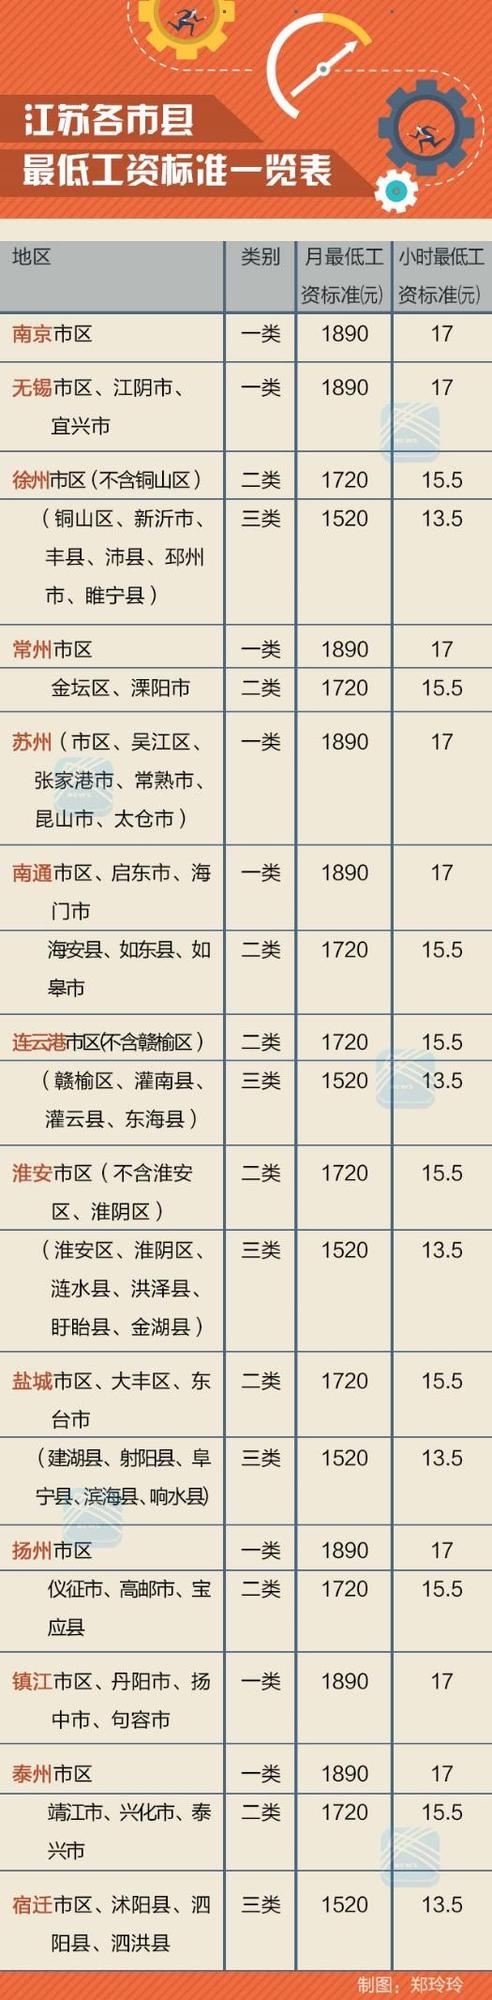 下月起江苏将上调最低工资标准 重点影响六群人